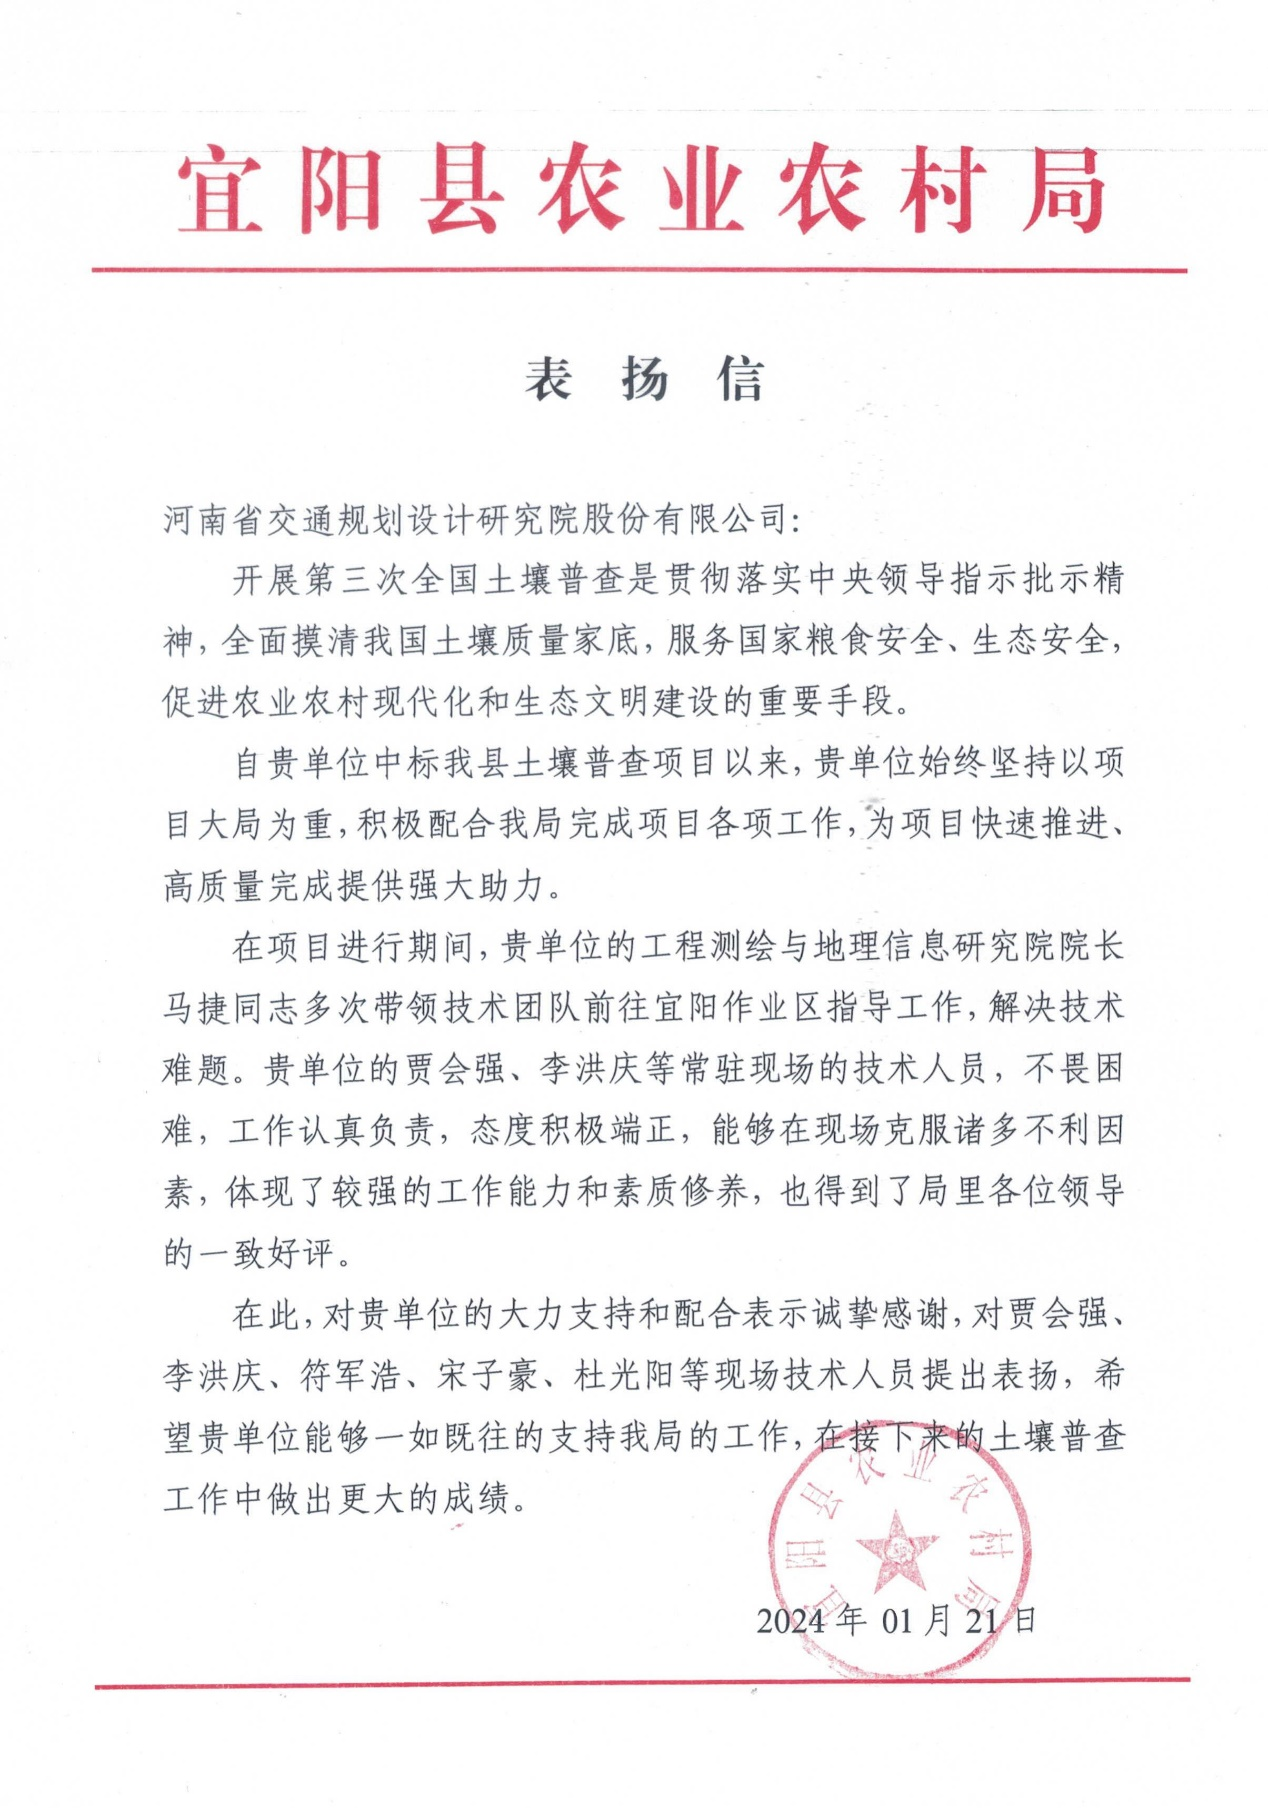 公司收到洛阳栾川县和宜阳县农业农村局发来的表扬信